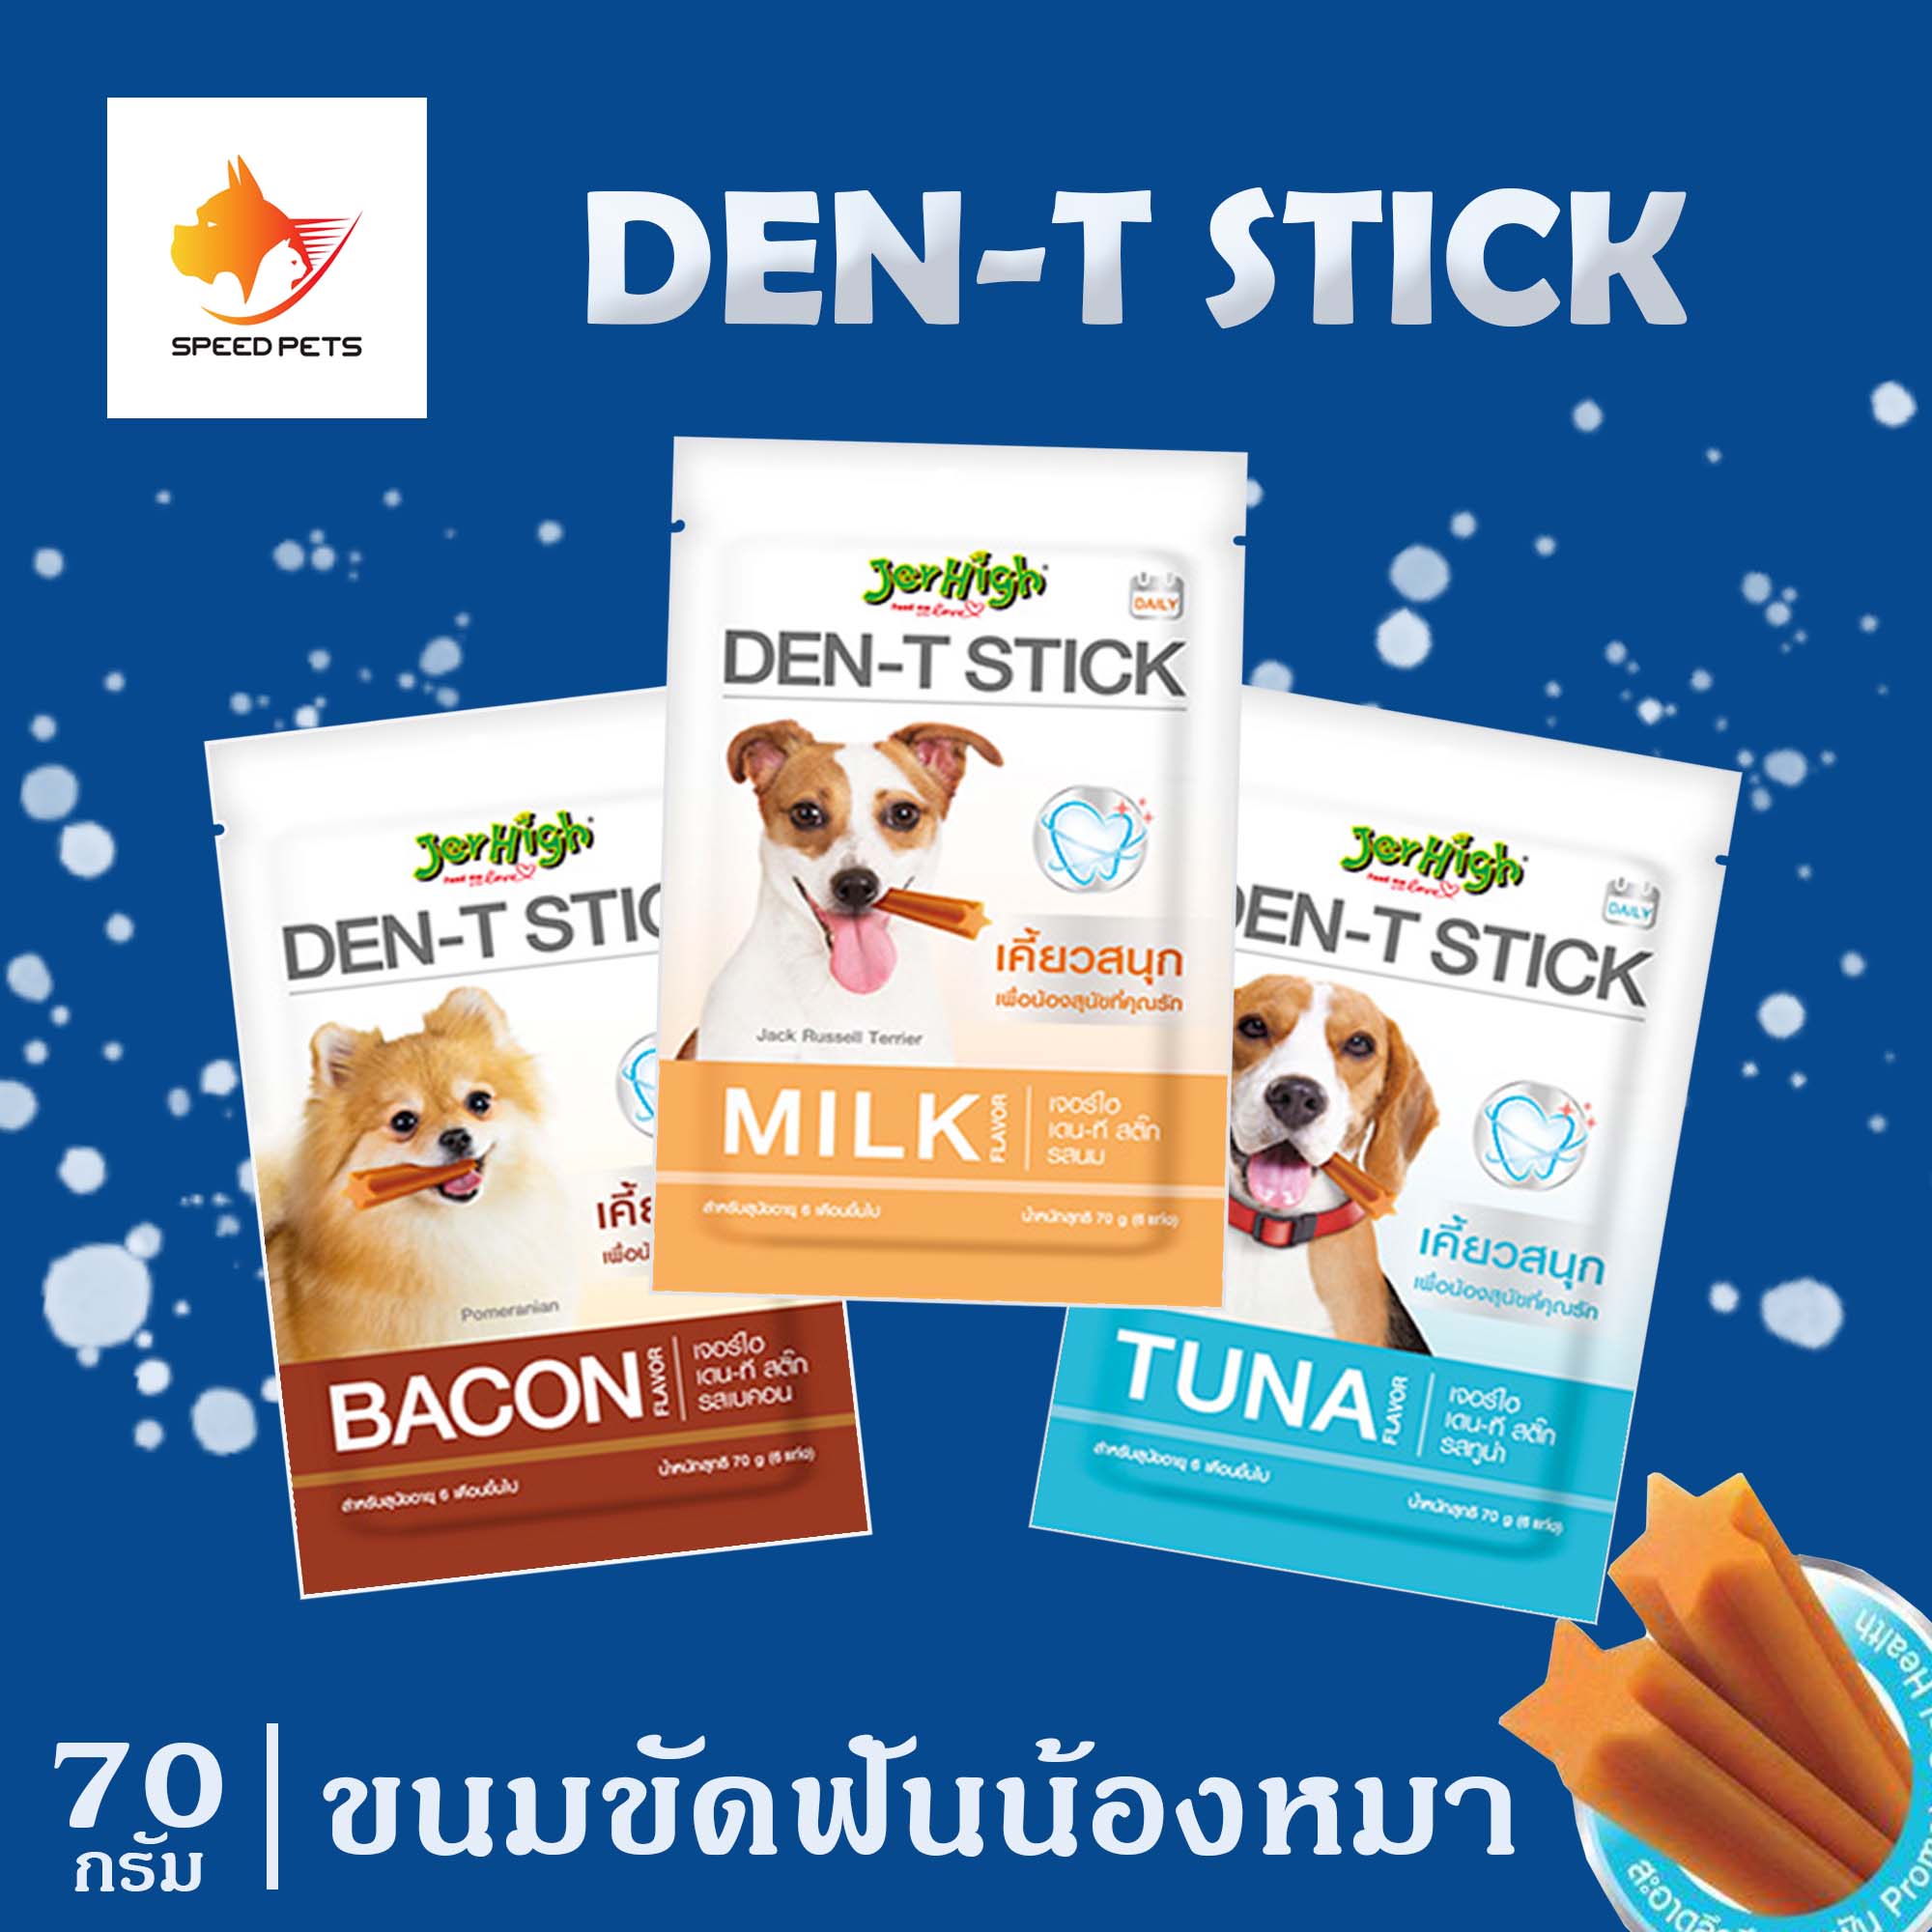 Jerhigh Den-T Stick ขนมขัดฟันสุนัขแบบแท่ง สุนัขพันธุ์เล็ก สำหรับสุนัขอายุ 6 เดือนขึ้นไป ขนาด 70 กรัม มีให้เลือก 4 รสชาติ